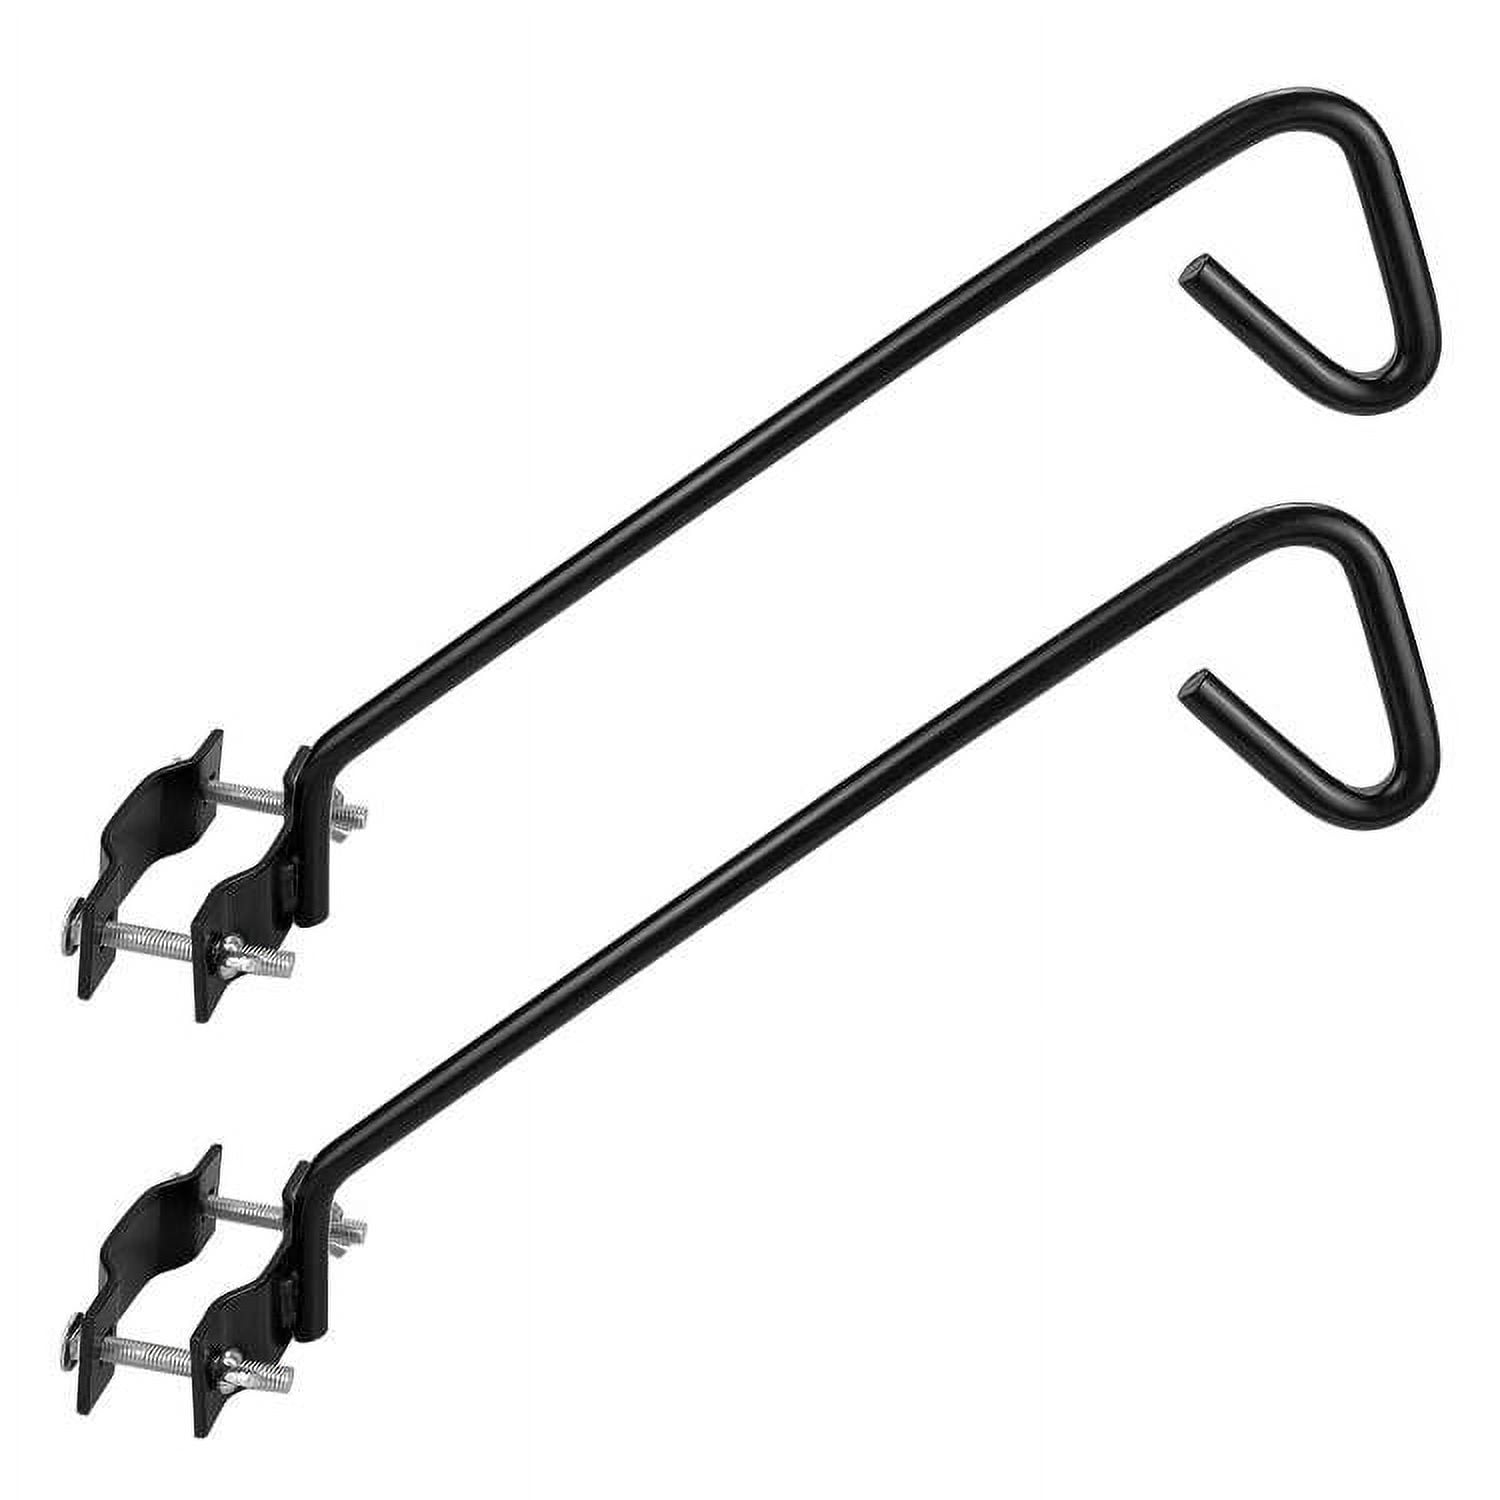 Arrow RHT300 Swivel Head Rivet Tool - Black - Includes 4 Nose